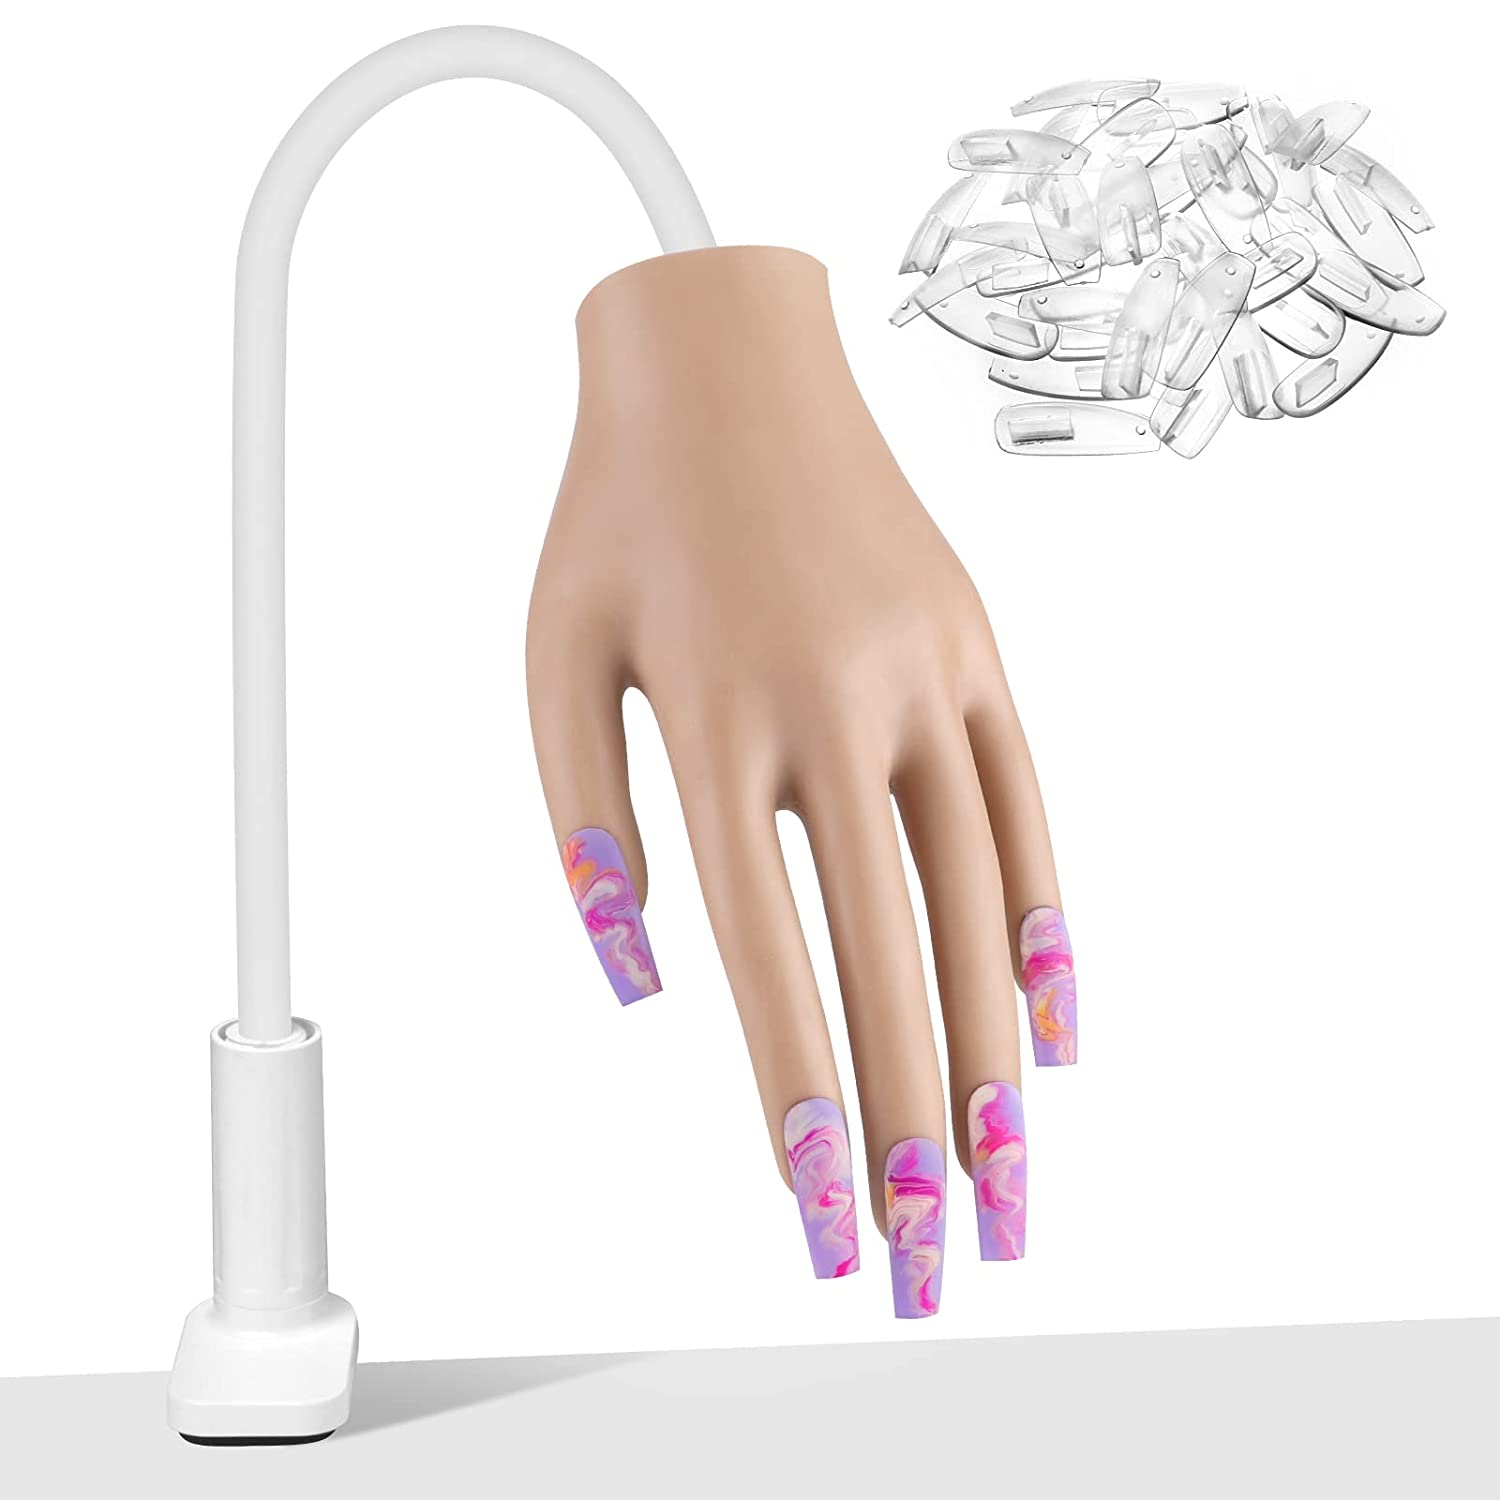 nail hand model